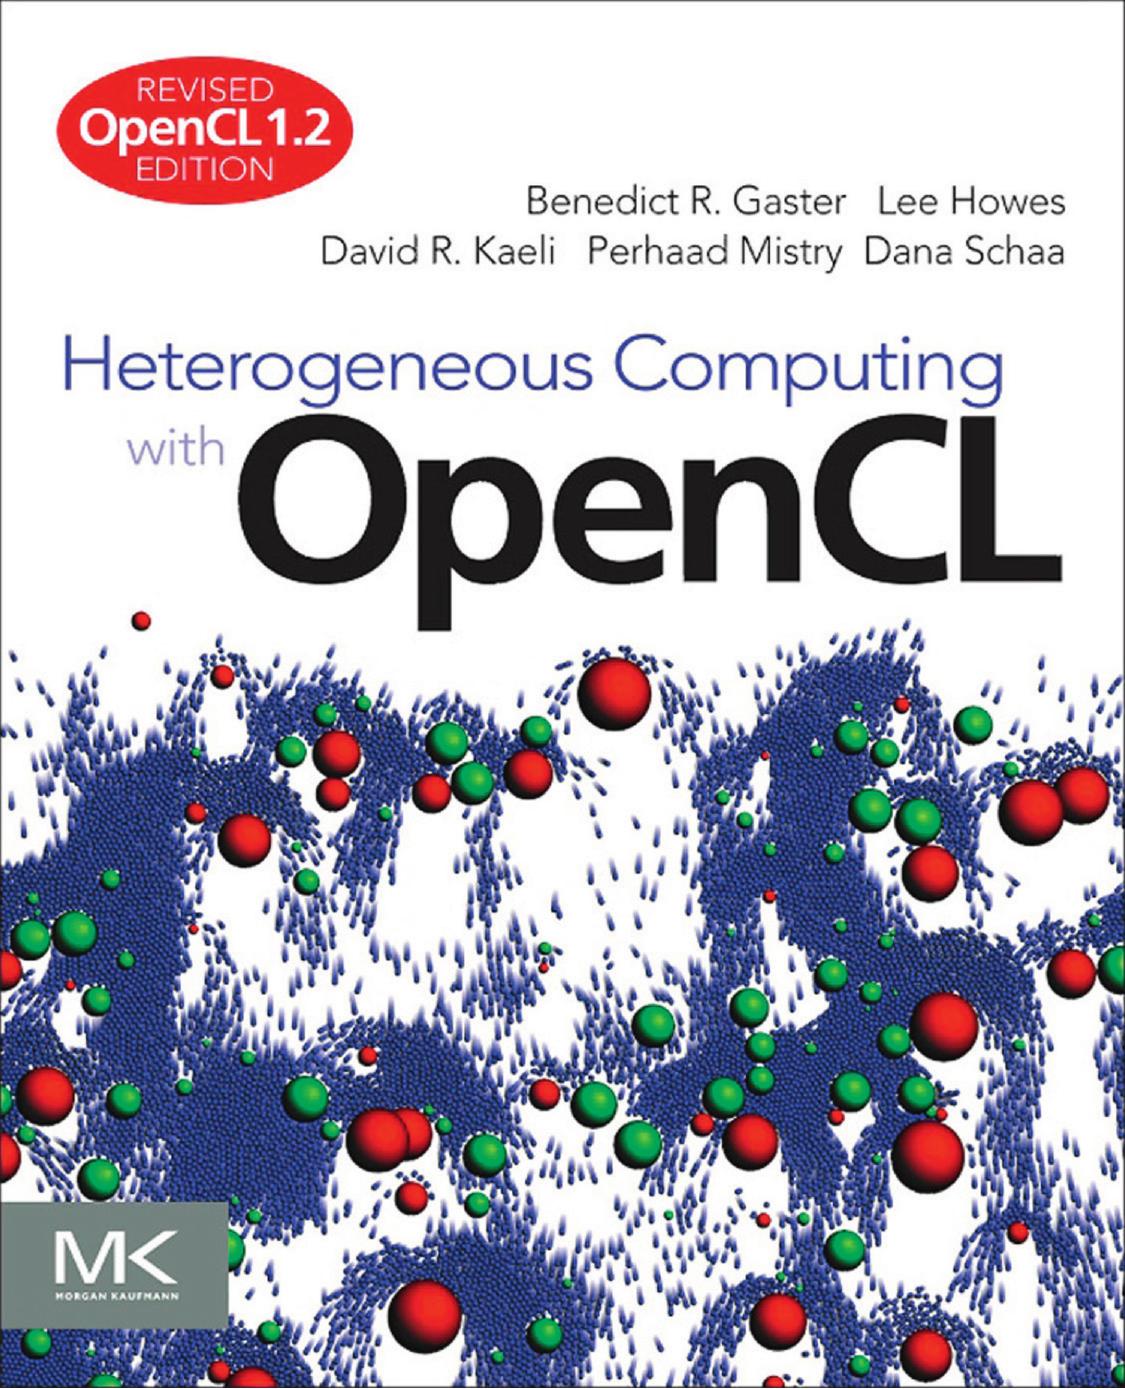 Heterogeneous Computing with OpenCL by Benedict R. Gaster & Lee Howes & David R. Kaeli & Perhaad Mistry & Dana Schaa